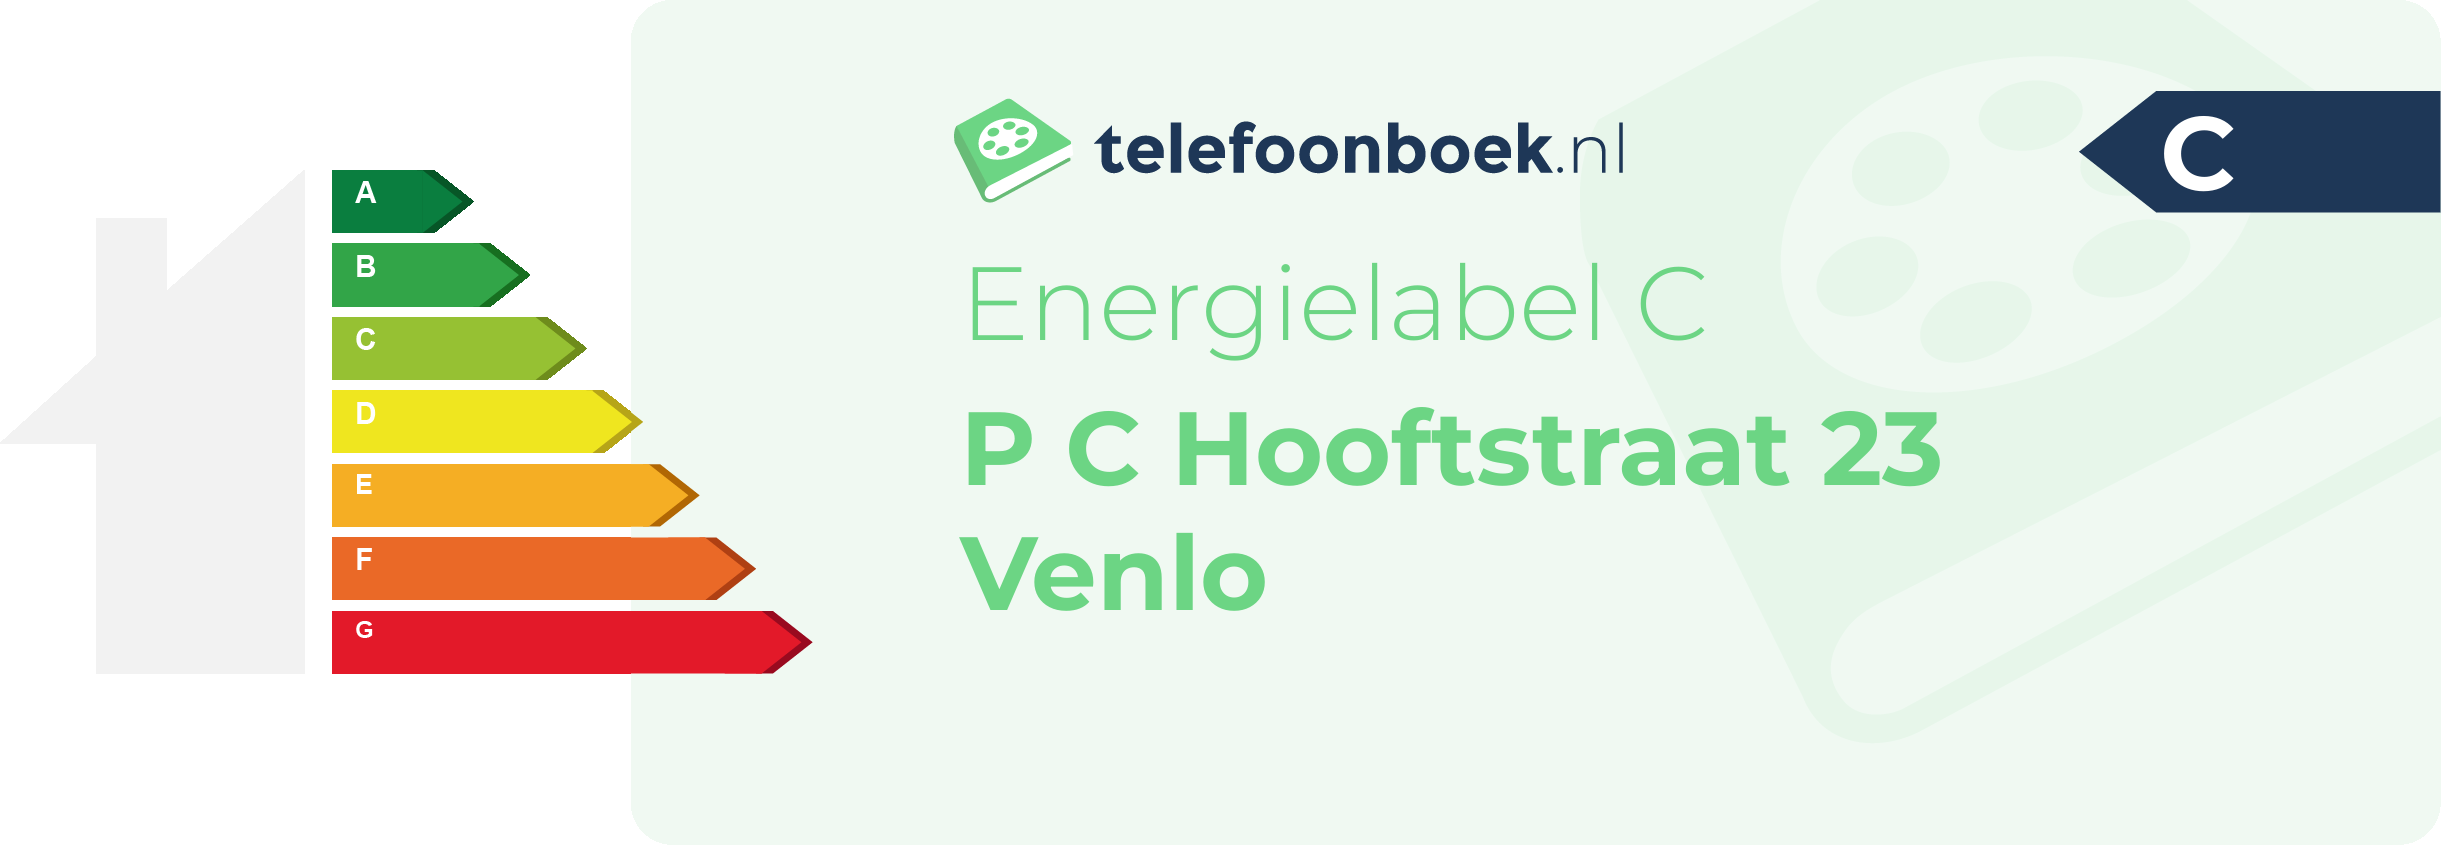 Energielabel P C Hooftstraat 23 Venlo